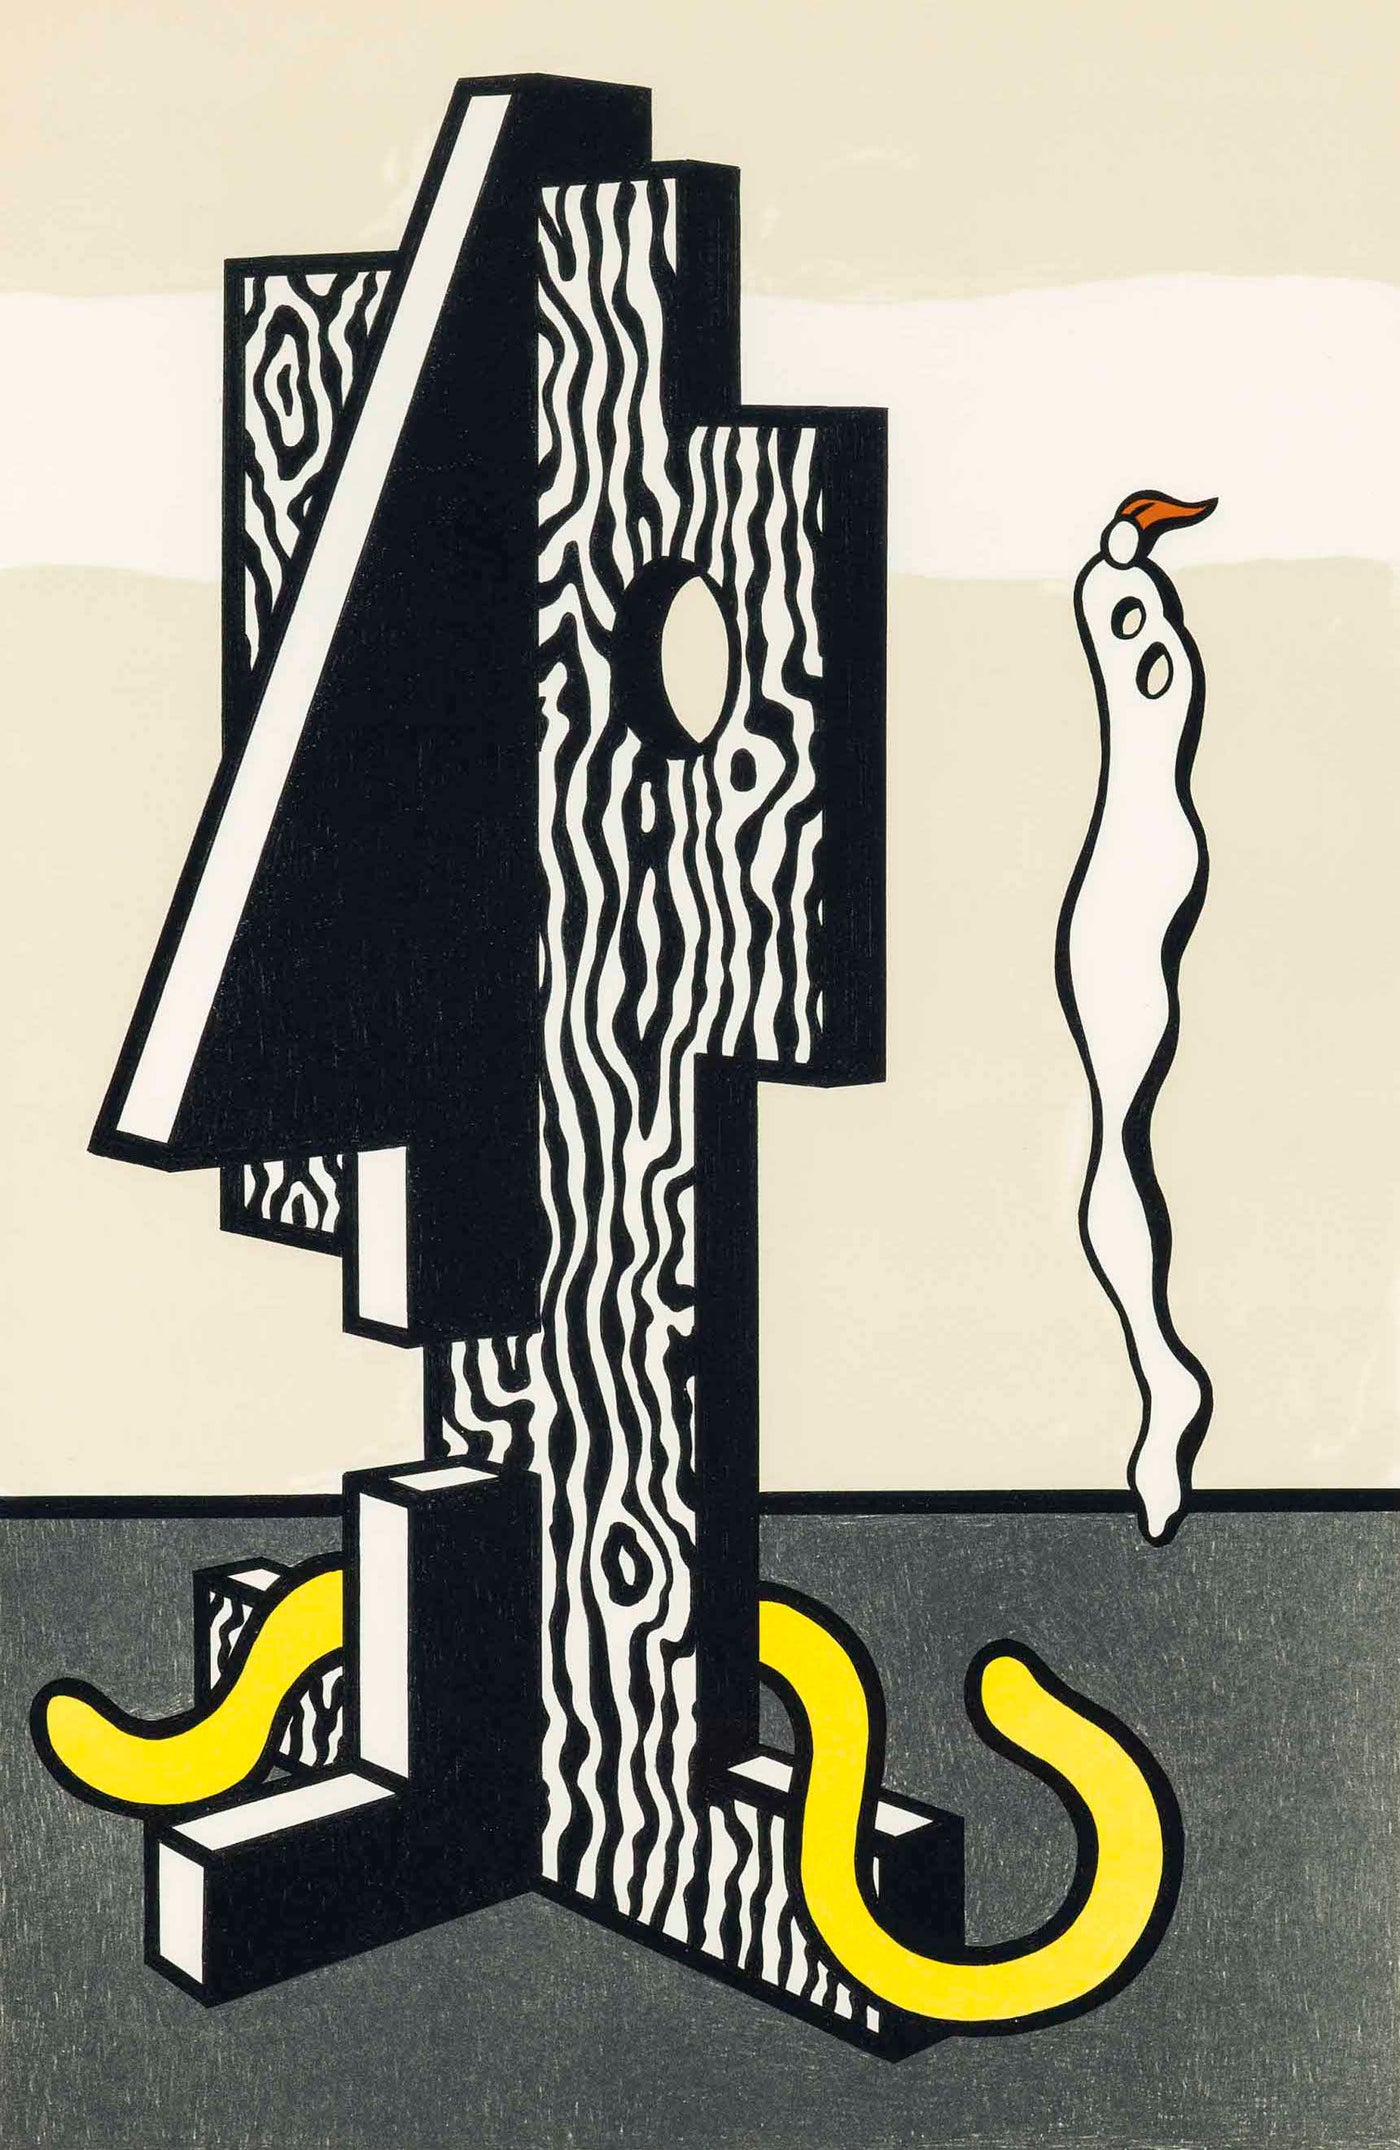 Roy Lichtenstein Figures (Corlett 156) 1978